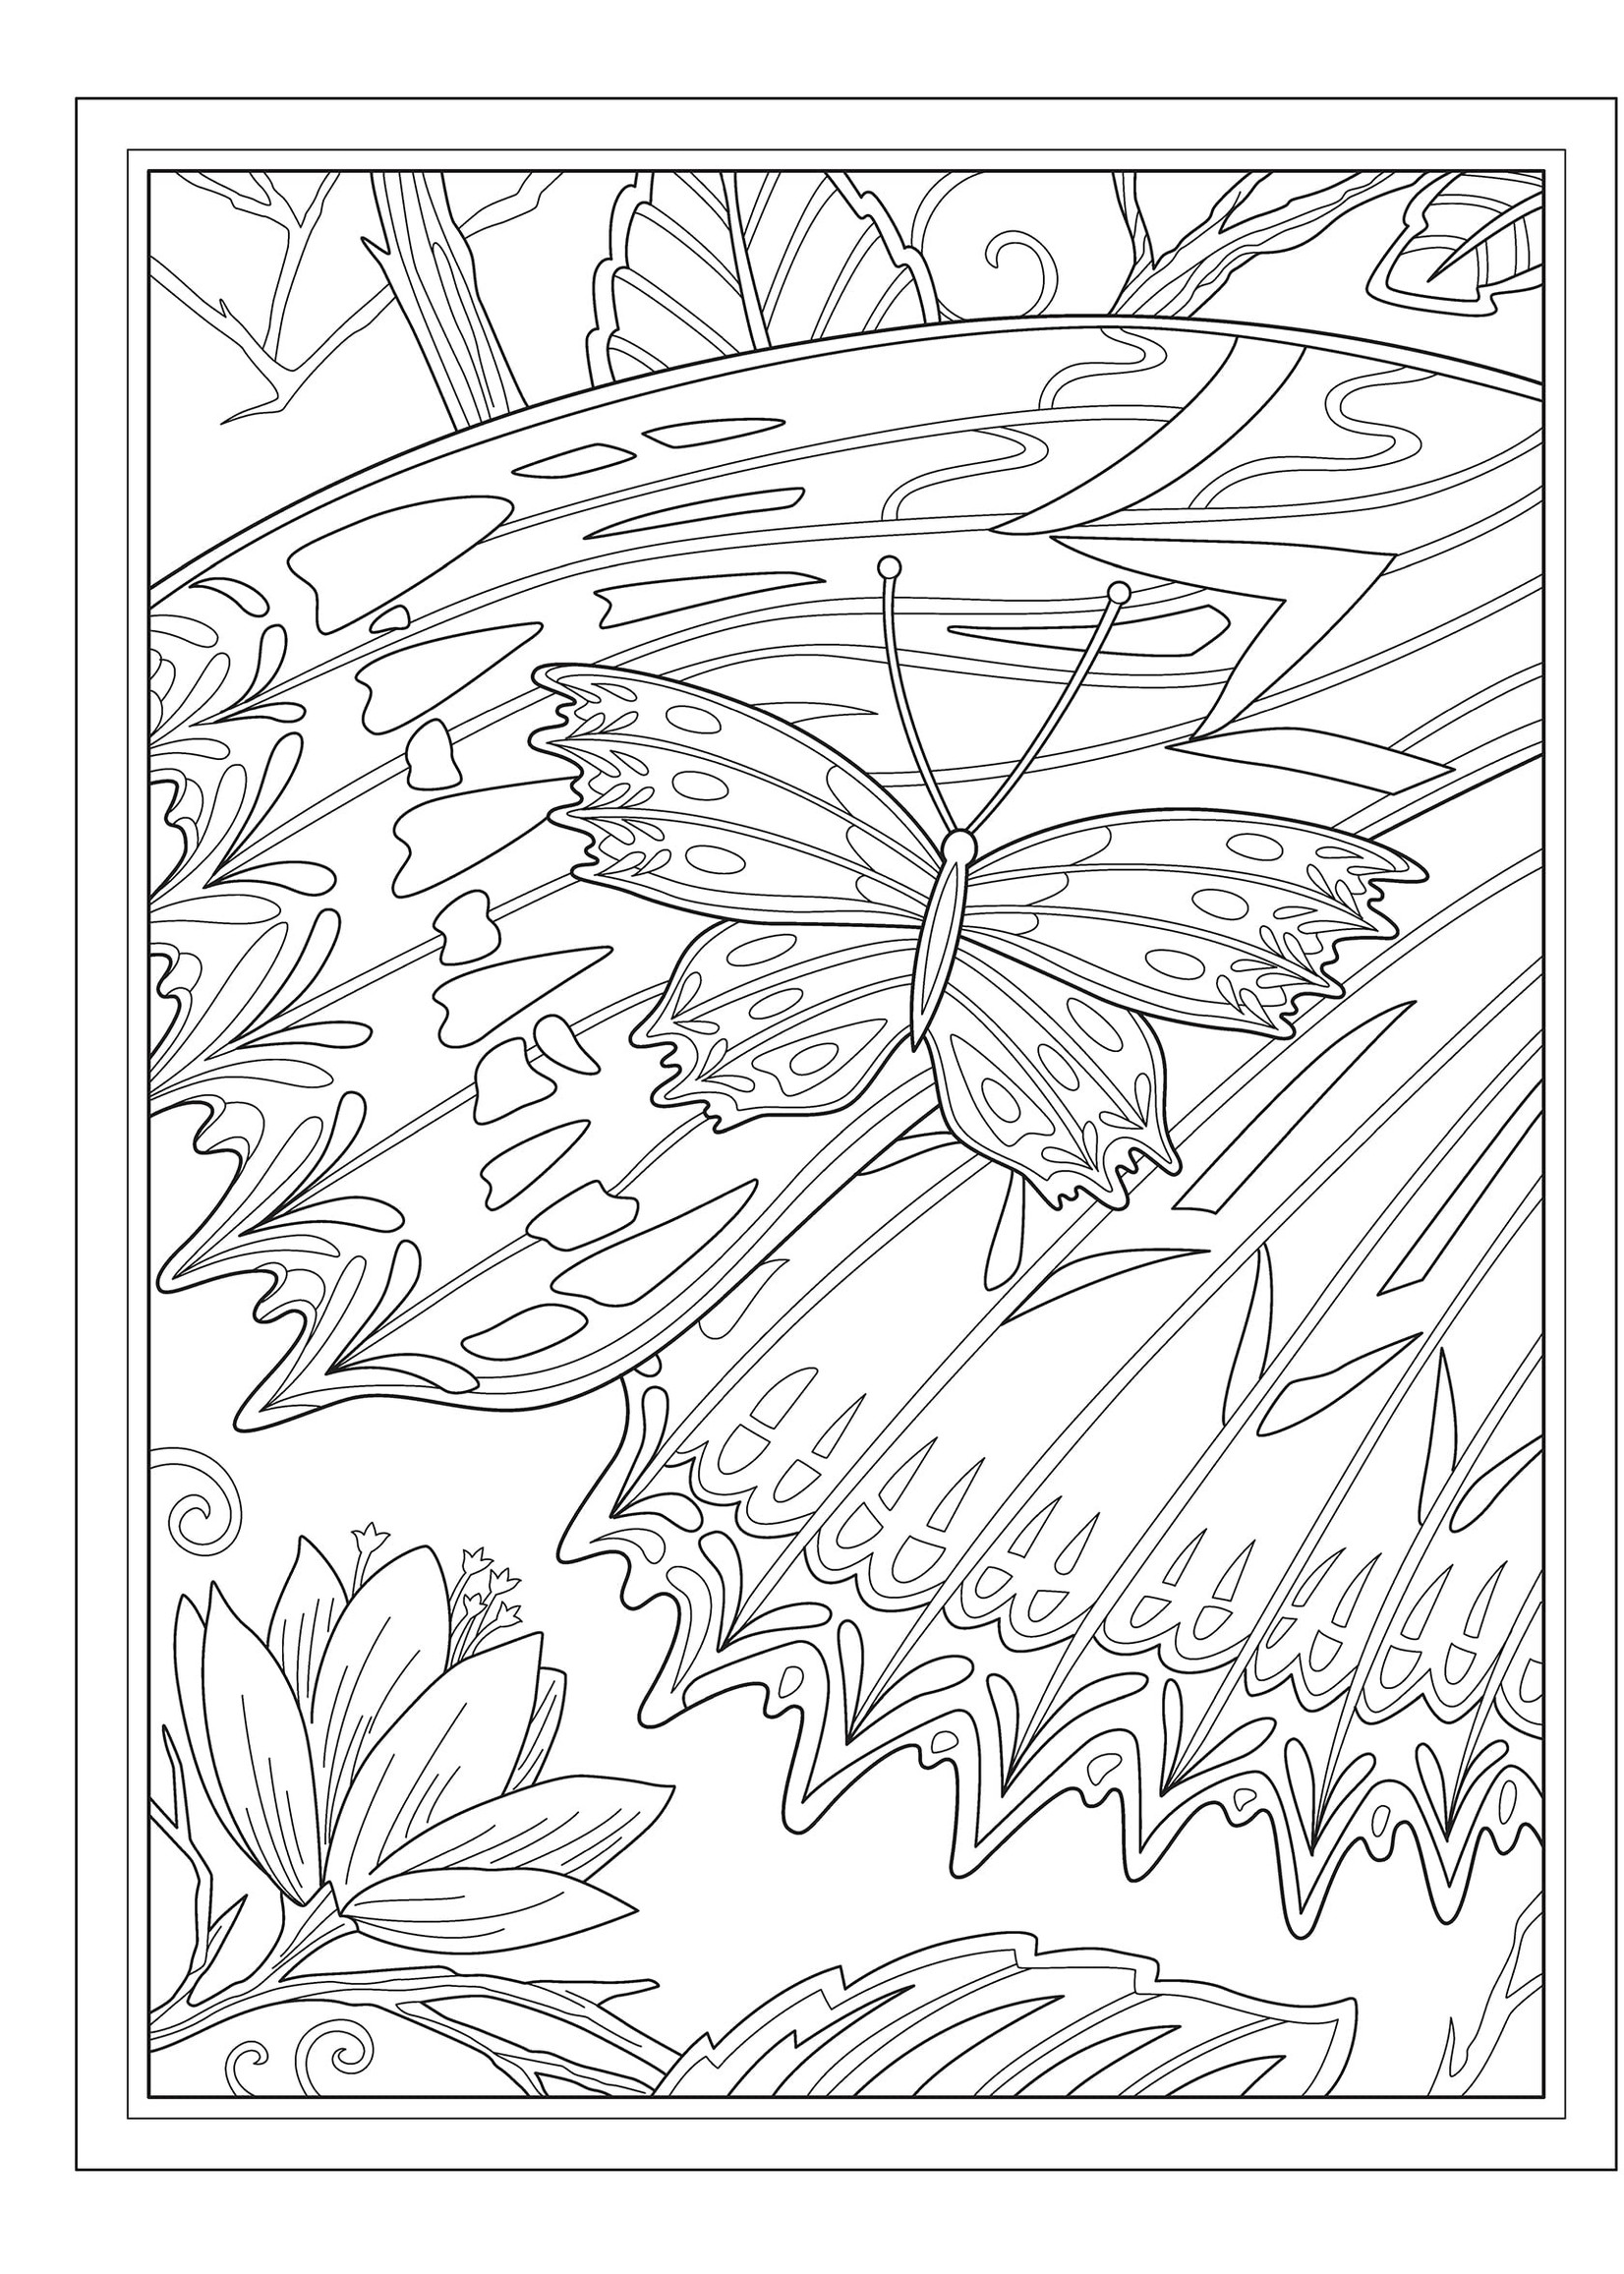 Creative Haven Butterflies Flights of Fancy Coloring Book